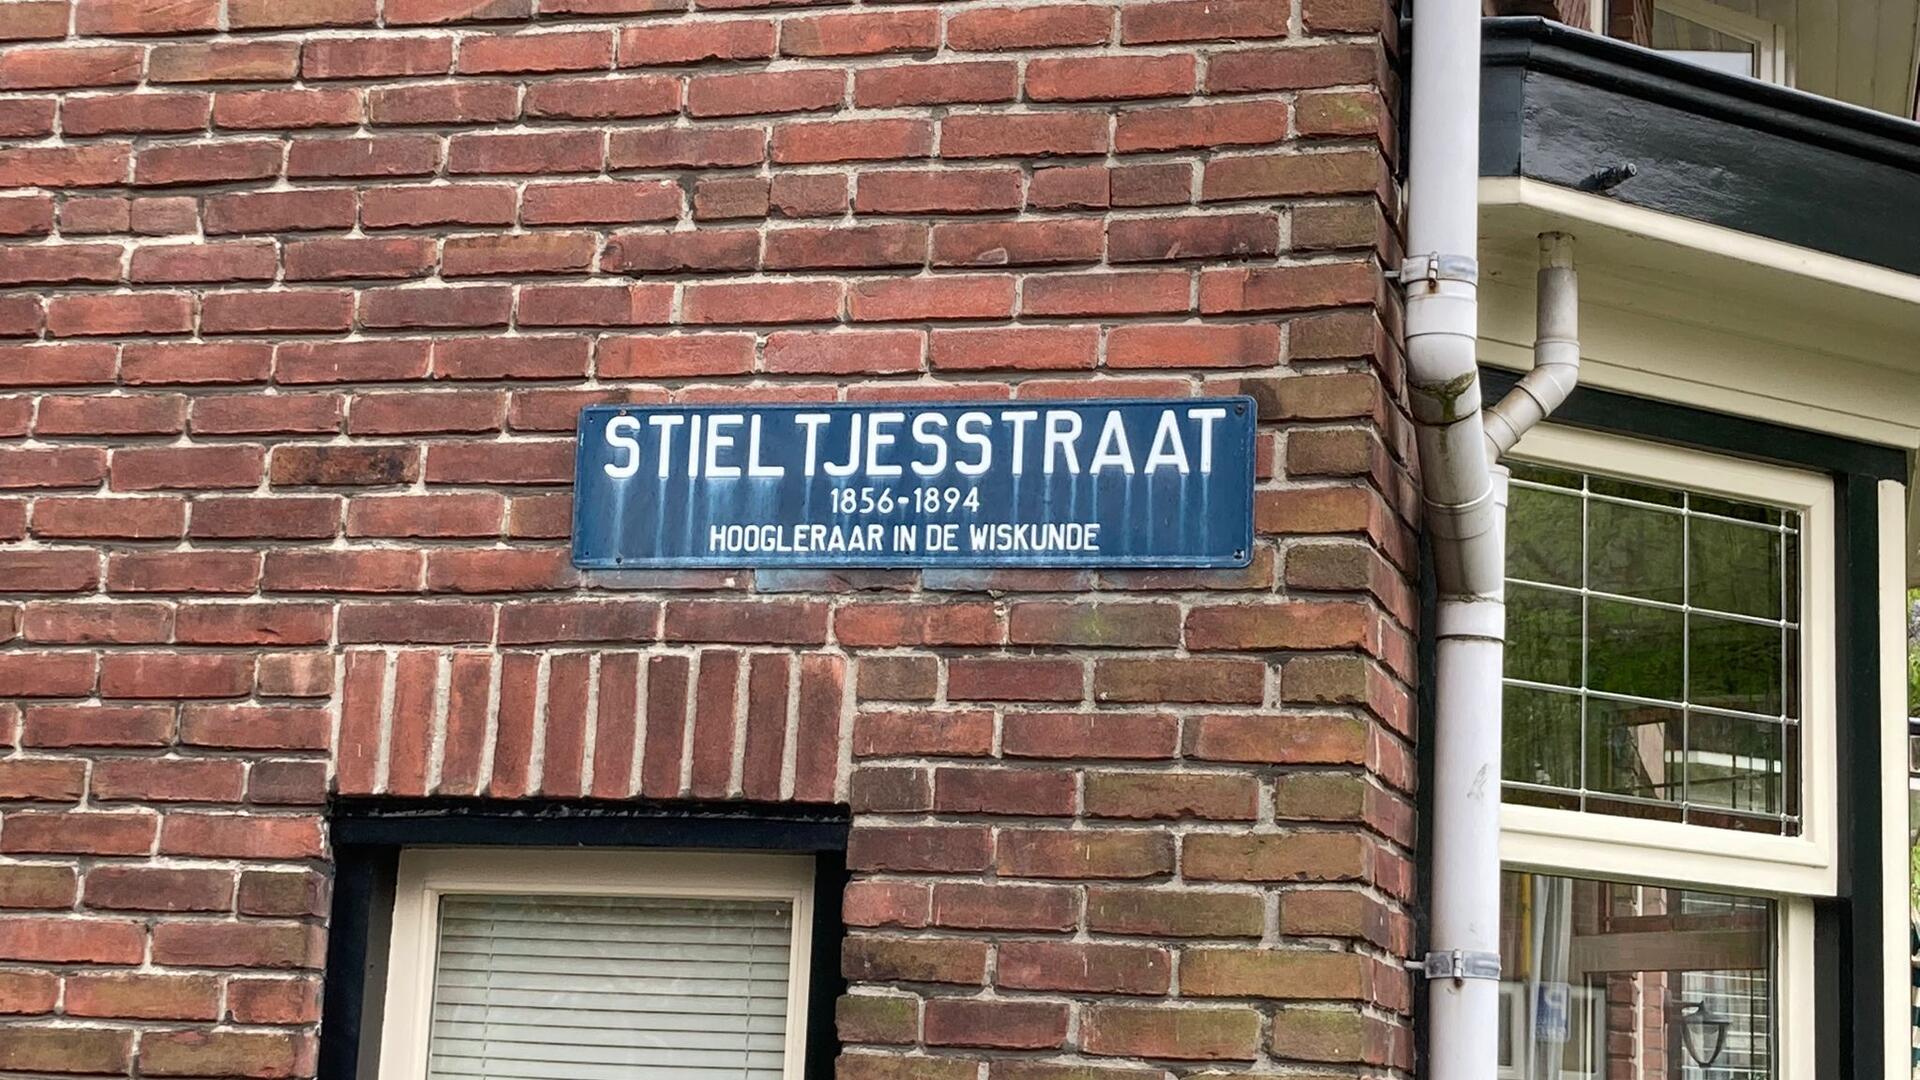 Stieltjesstraat